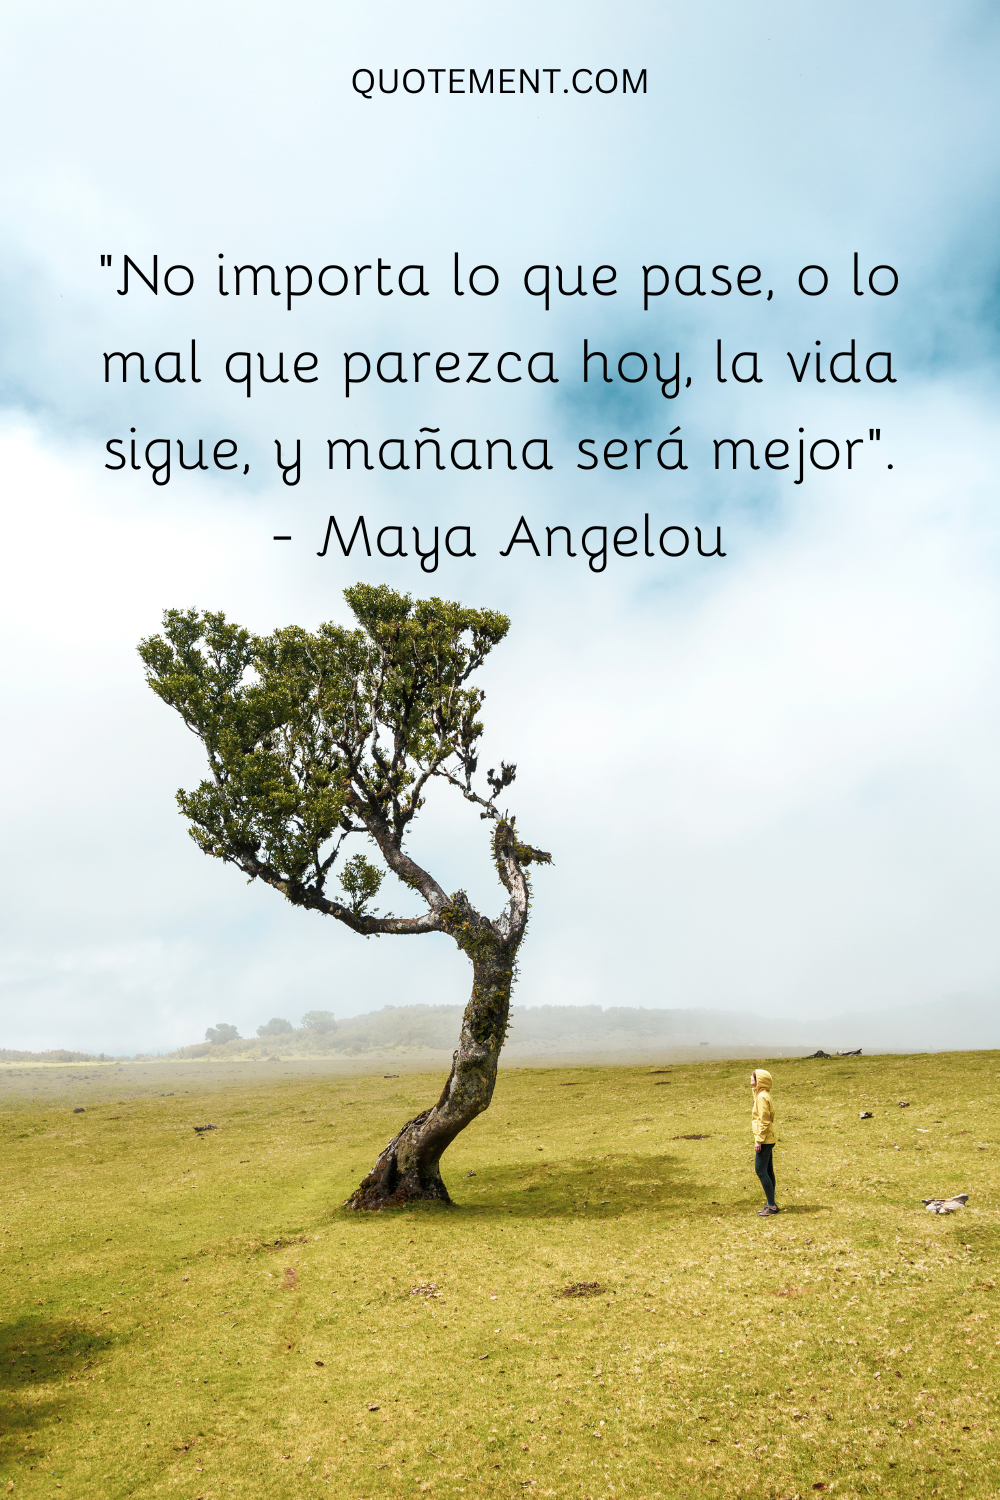 "No importa lo que pase, o lo mal que parezca hoy, la vida sigue, y mañana será mejor". - Maya Angelou